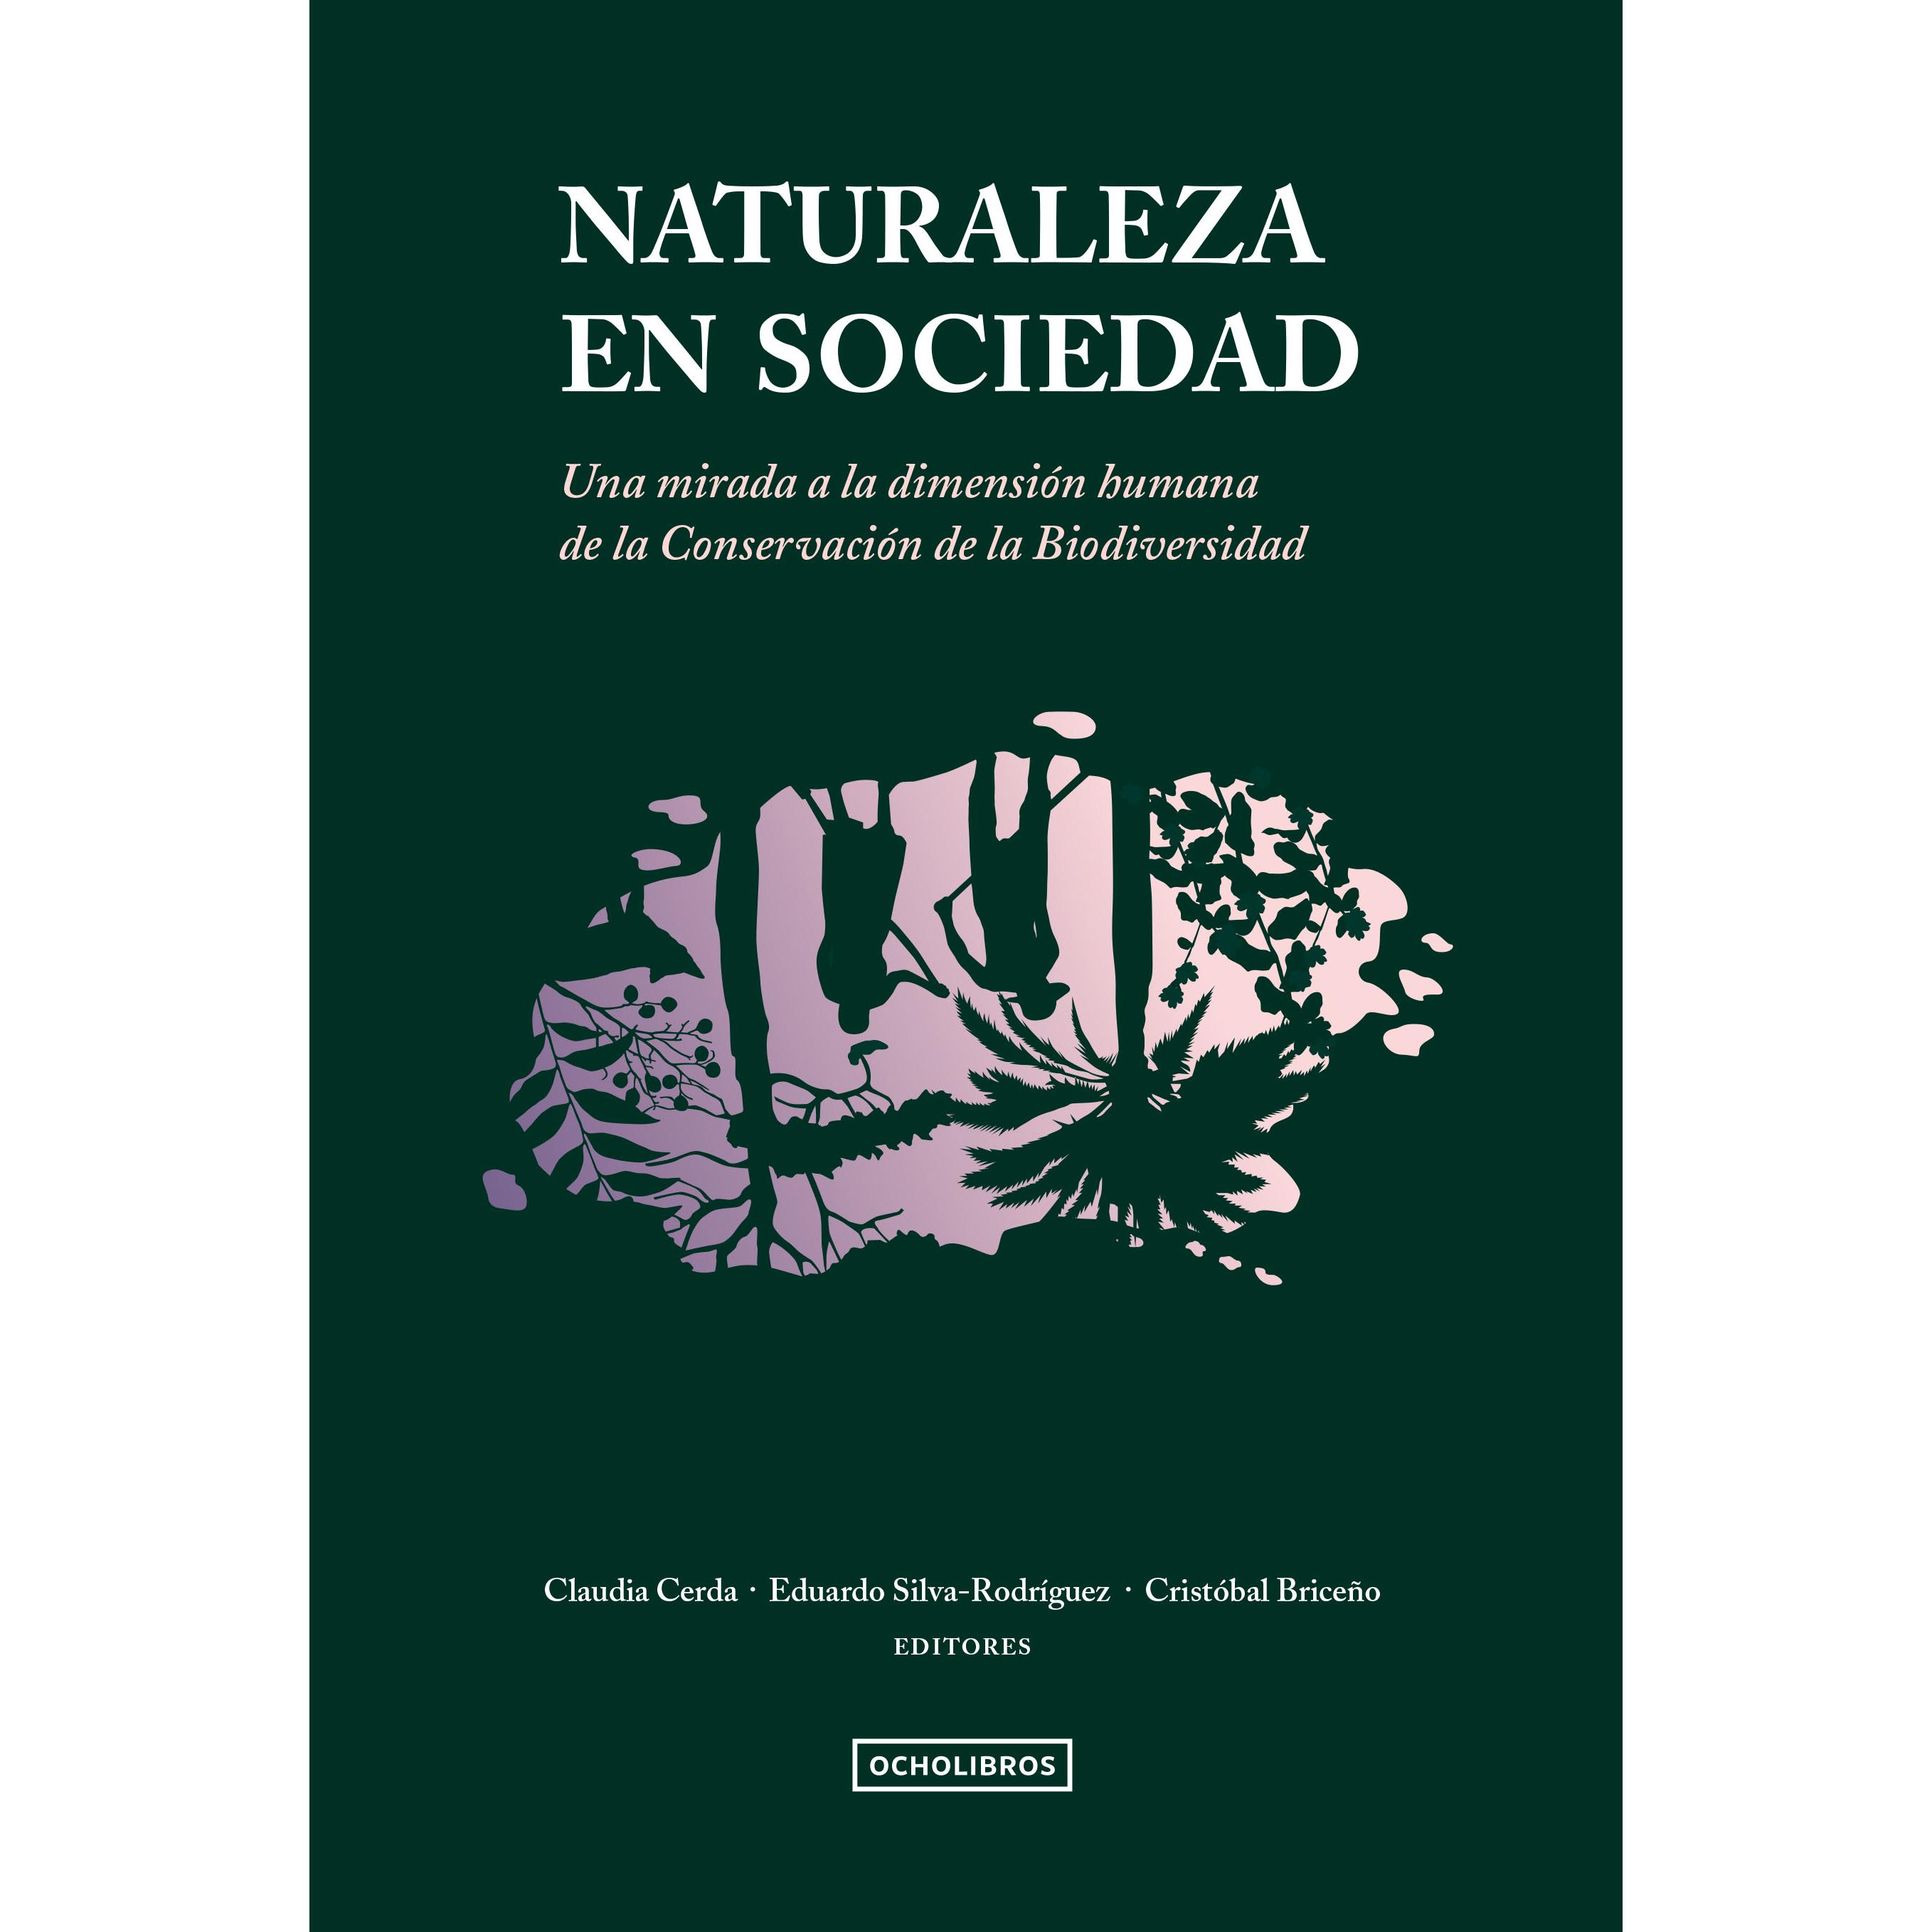 El libro será presentado por Dr. Cristóbal Pizarro de la Facultad de Ciencias Forestales de la U. de Concepción.